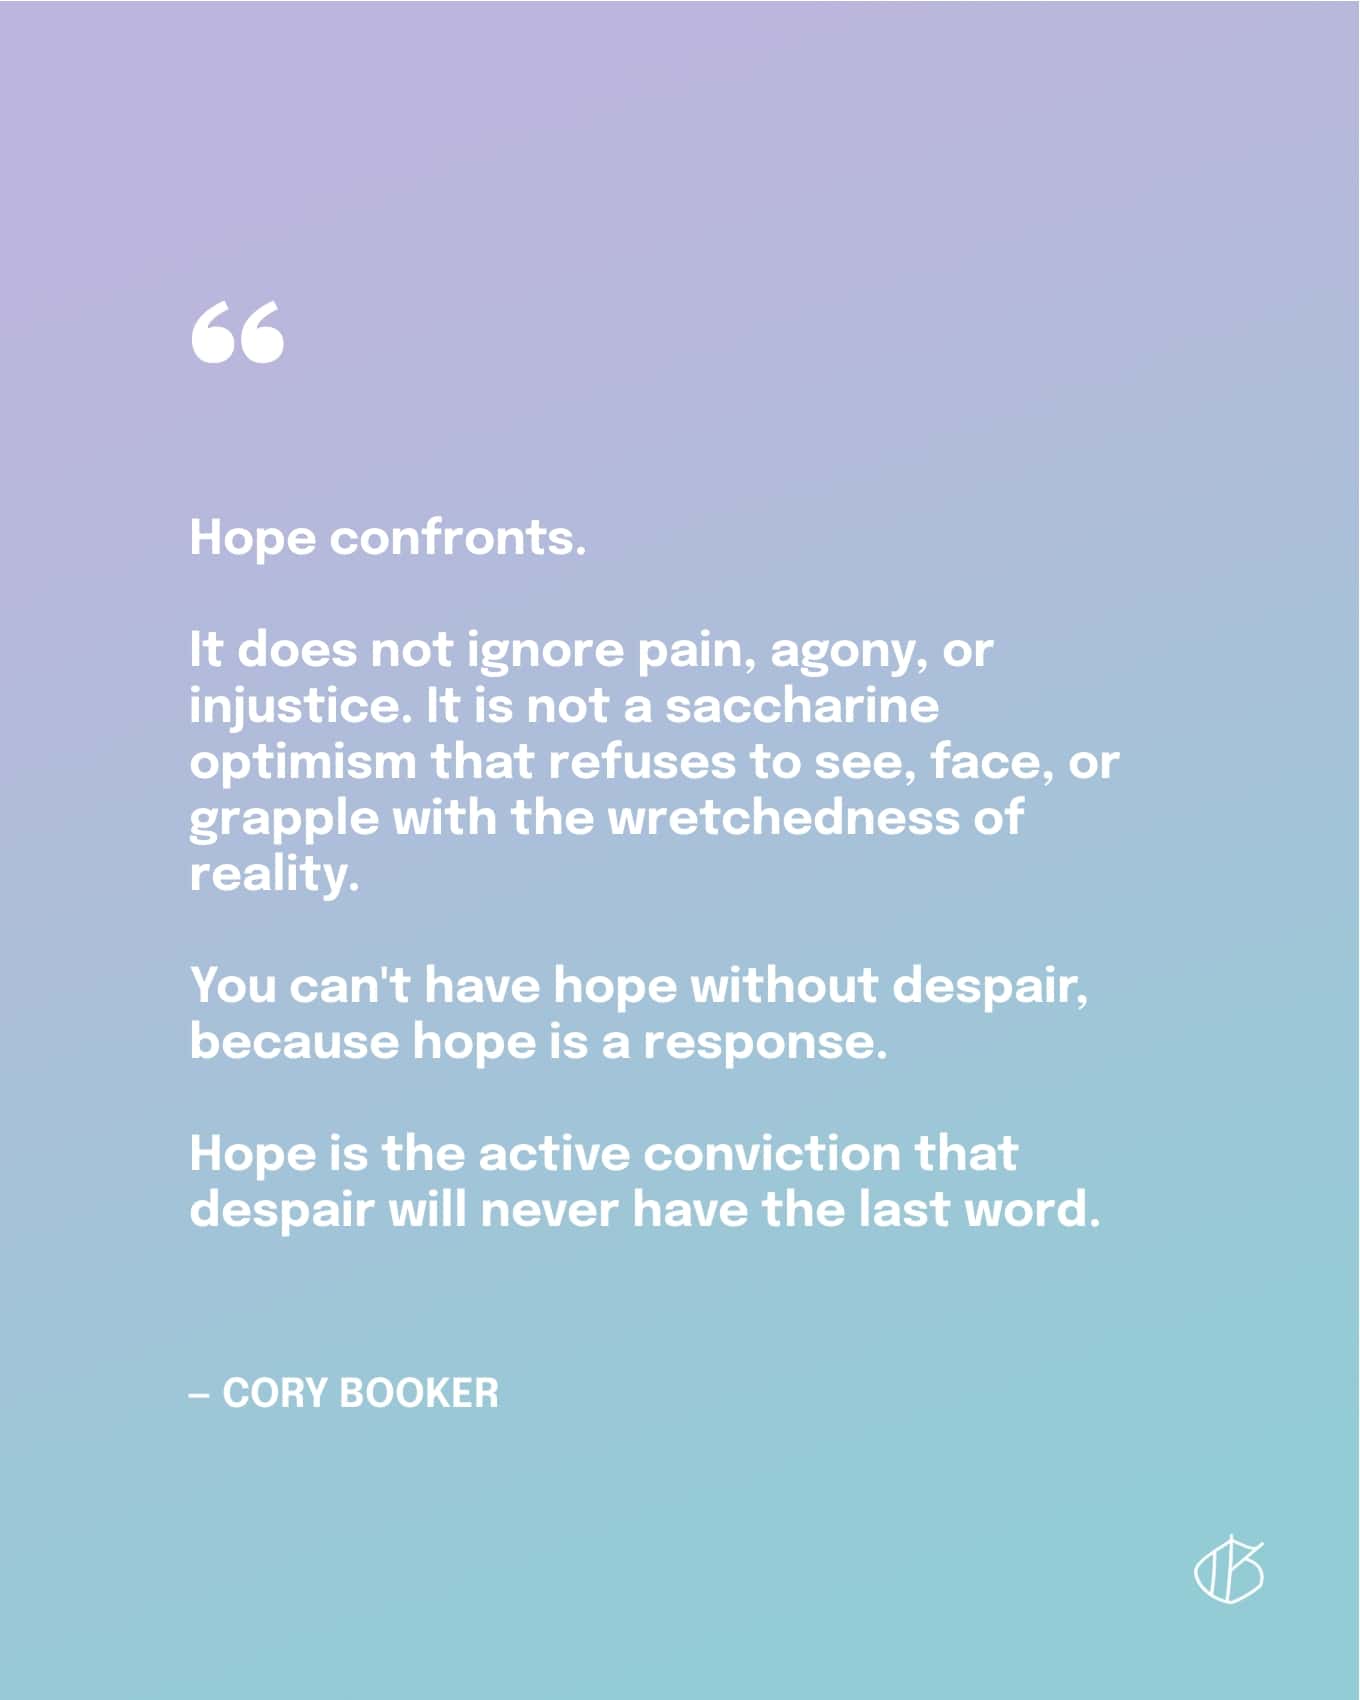 Citaat: Hoop confronteert. Het negeert pijn, pijn of onrecht niet. Het is geen saccharine optimisme dat weigert de ellende van de werkelijkheid te zien, onder ogen te zien of ermee te worstelen. Je kunt geen hoop hebben zonder wanhoop, want hoop is een reactie. Hoop is de actieve overtuiging dat wanhoop nooit het laatste woord zal hebben. - Cory Booker